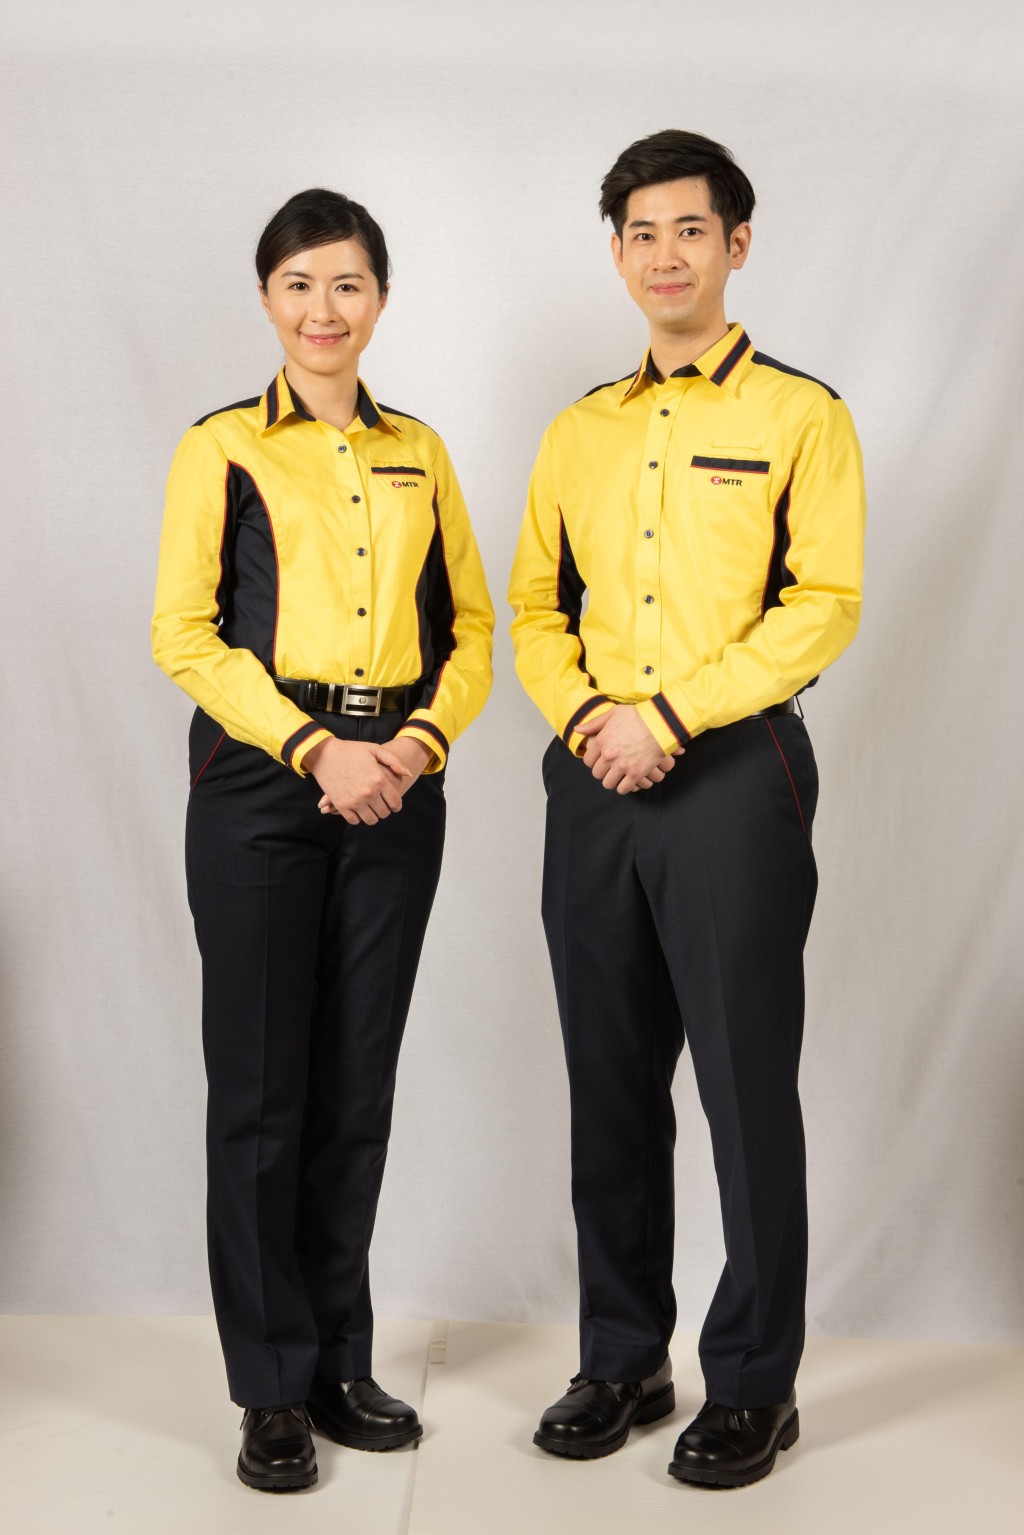 现今制服继续以黄蓝色调为设计基础，让乘客易于辨认；造型更加时尚，恤衫领位、袖口及腰身加上红、蓝色线条。港铁提供